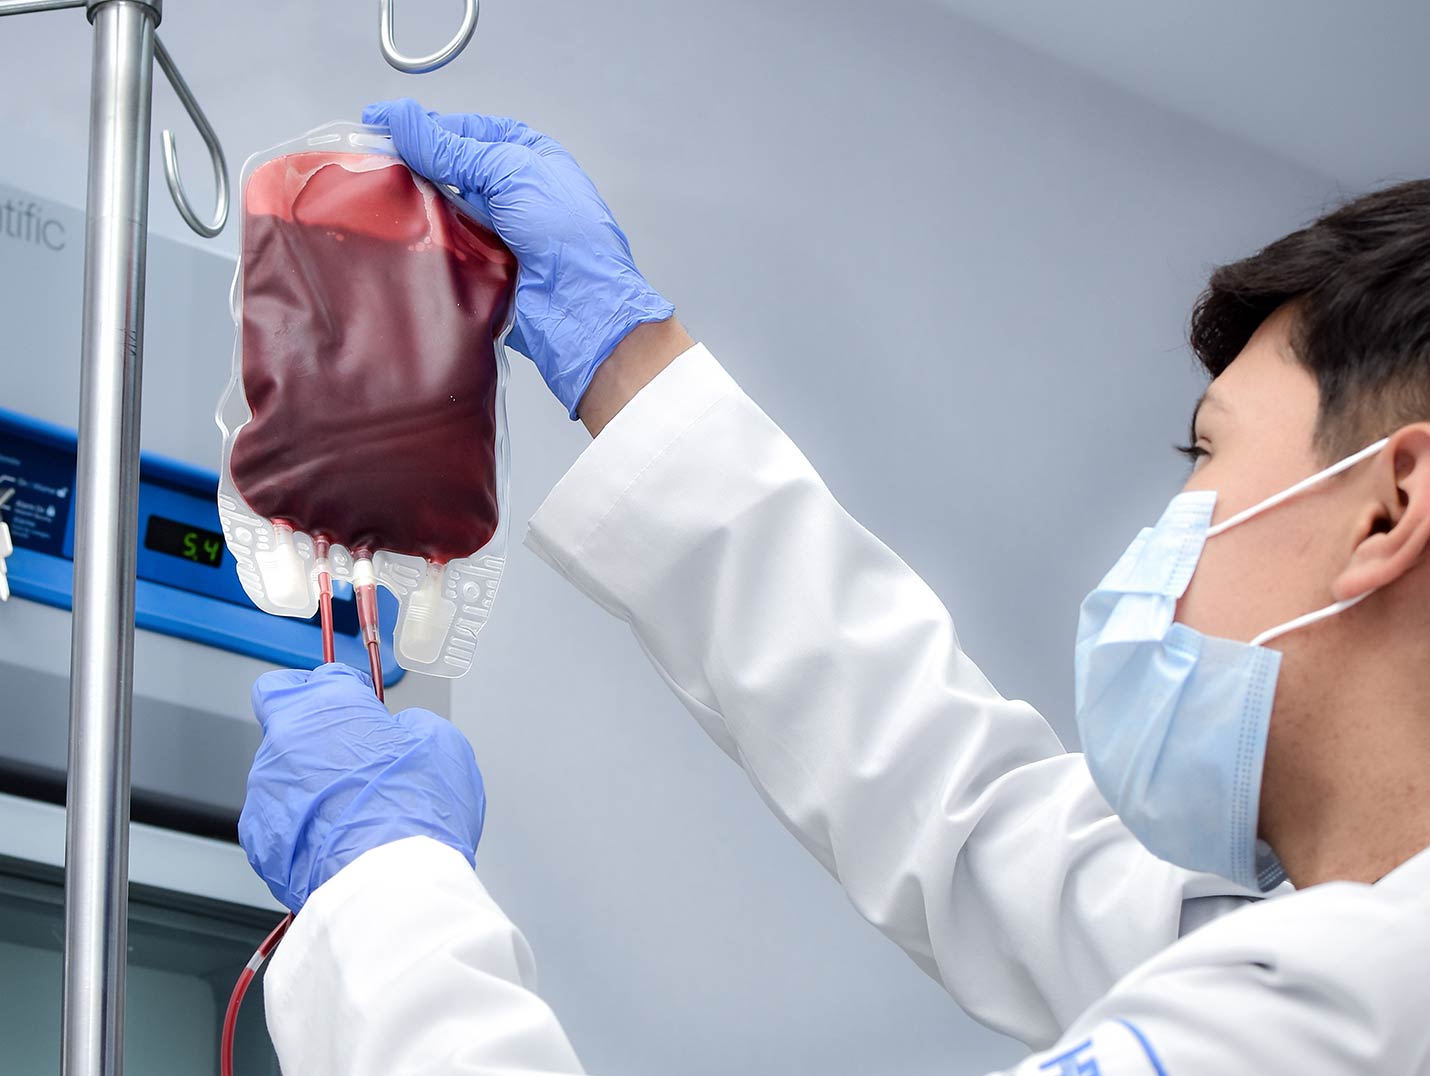 Doctor de Hospital Angeles con bata blanca y guantes azules, colocando una bolsa de transfusión sanguínea en un porta sueros